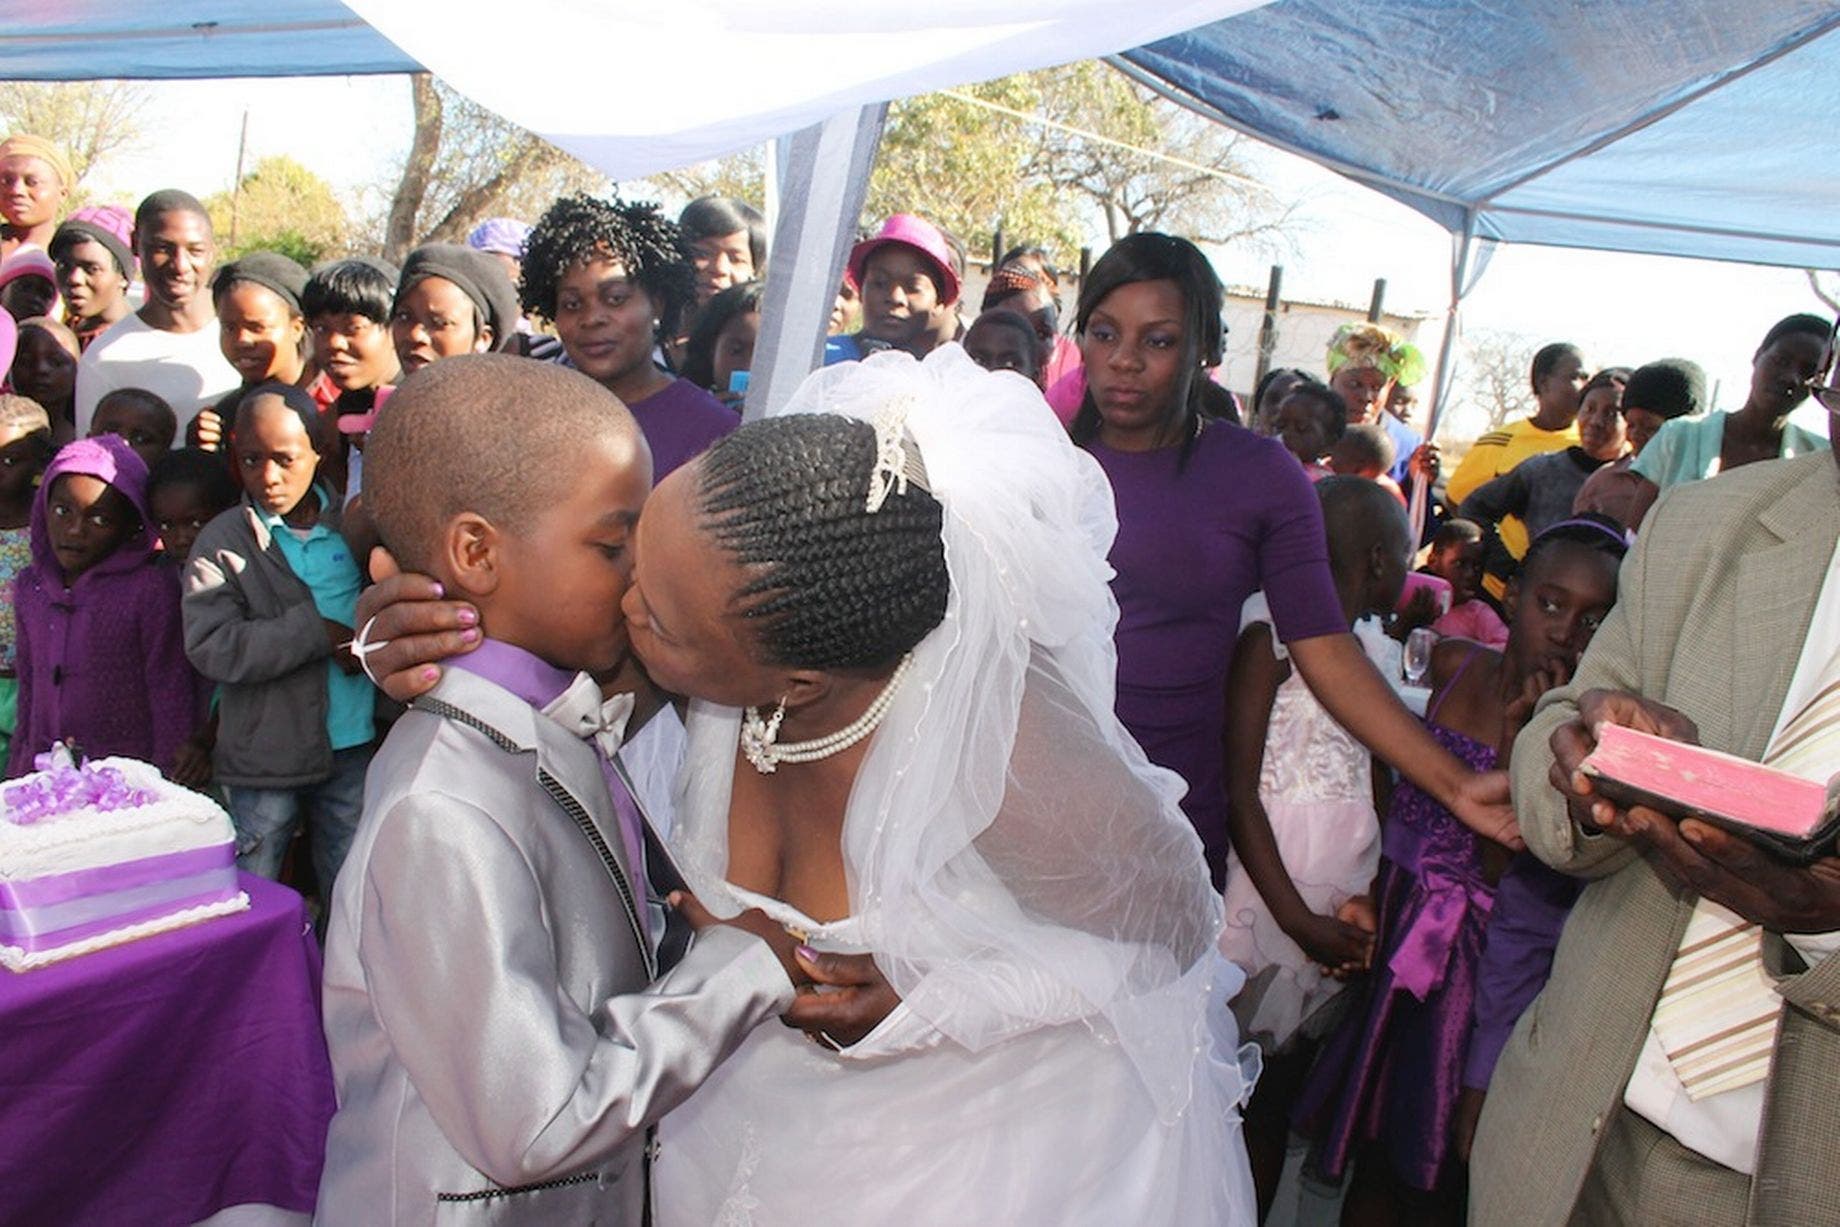 Un écolier âgé de 9 ans épouse une femme de 62 ans